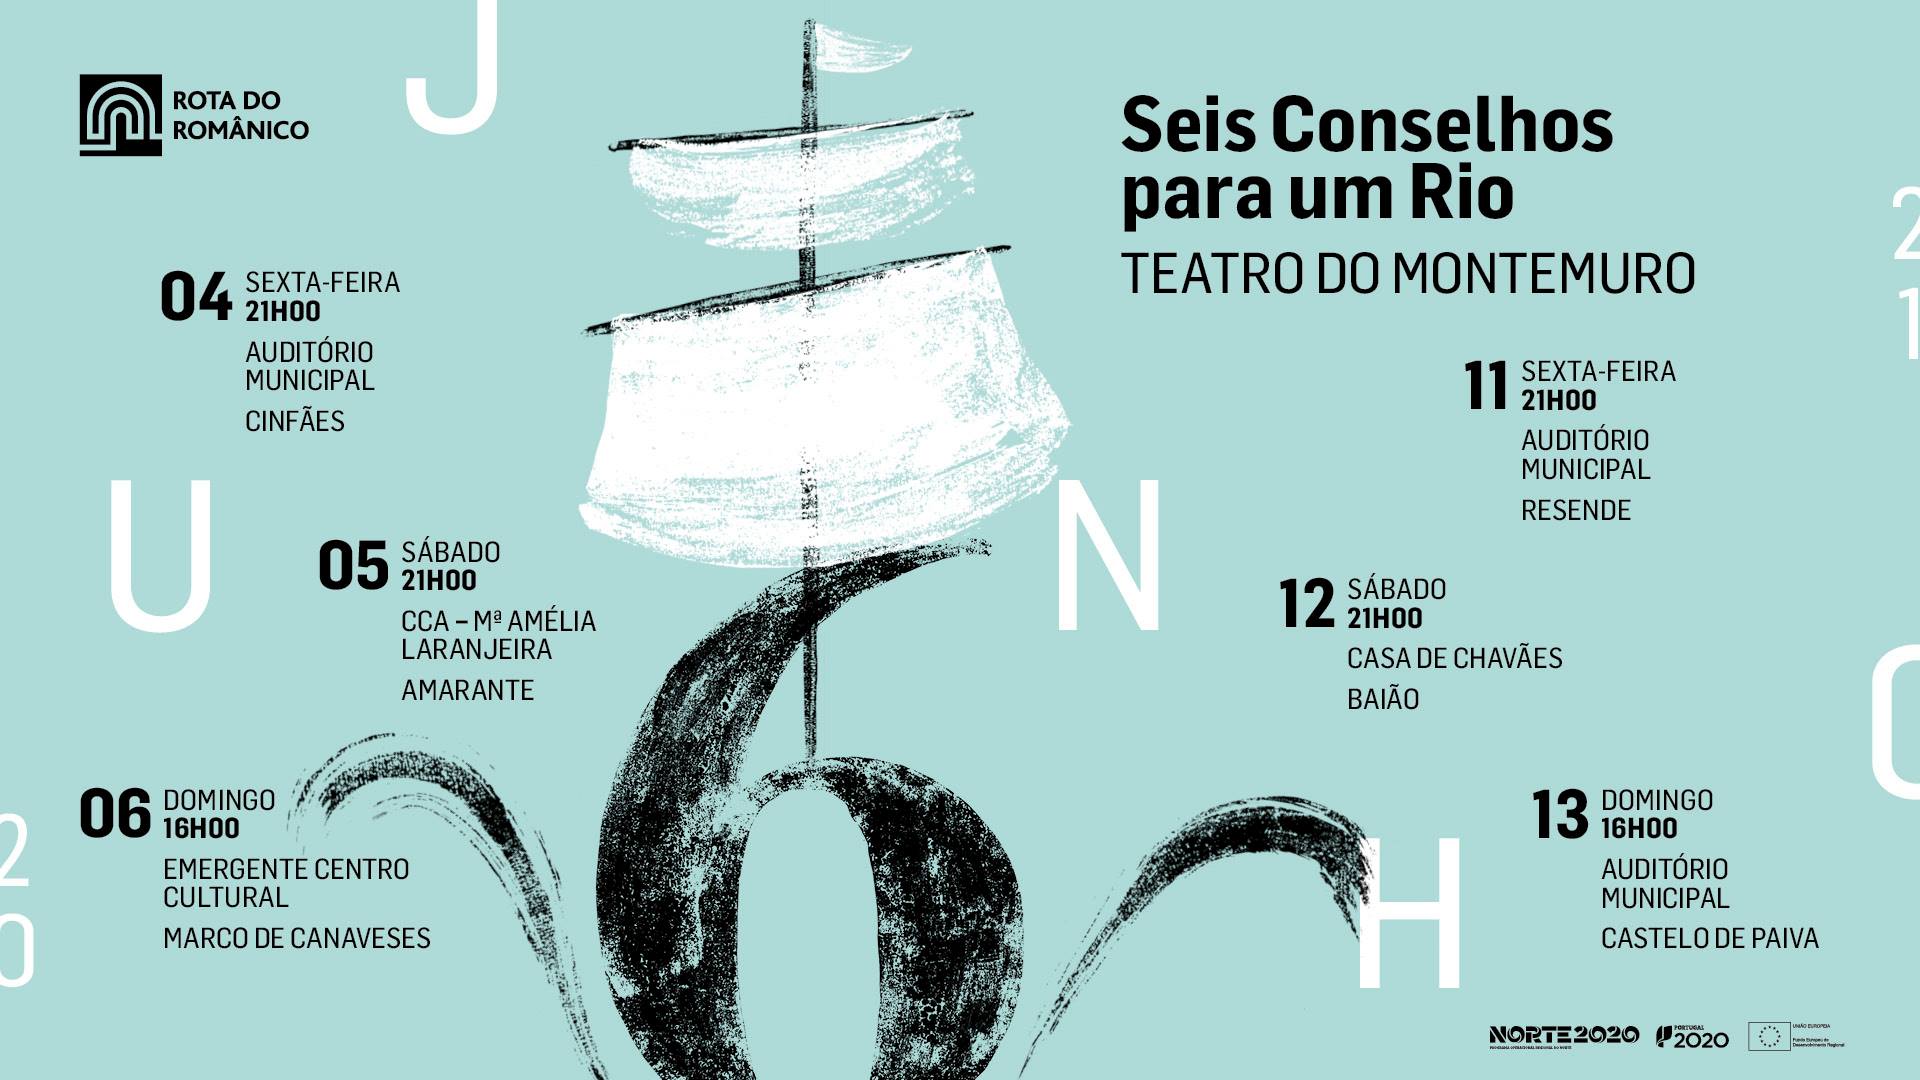 Amarante | Seis Conselhos para um Rio | Teatro do Montemuro